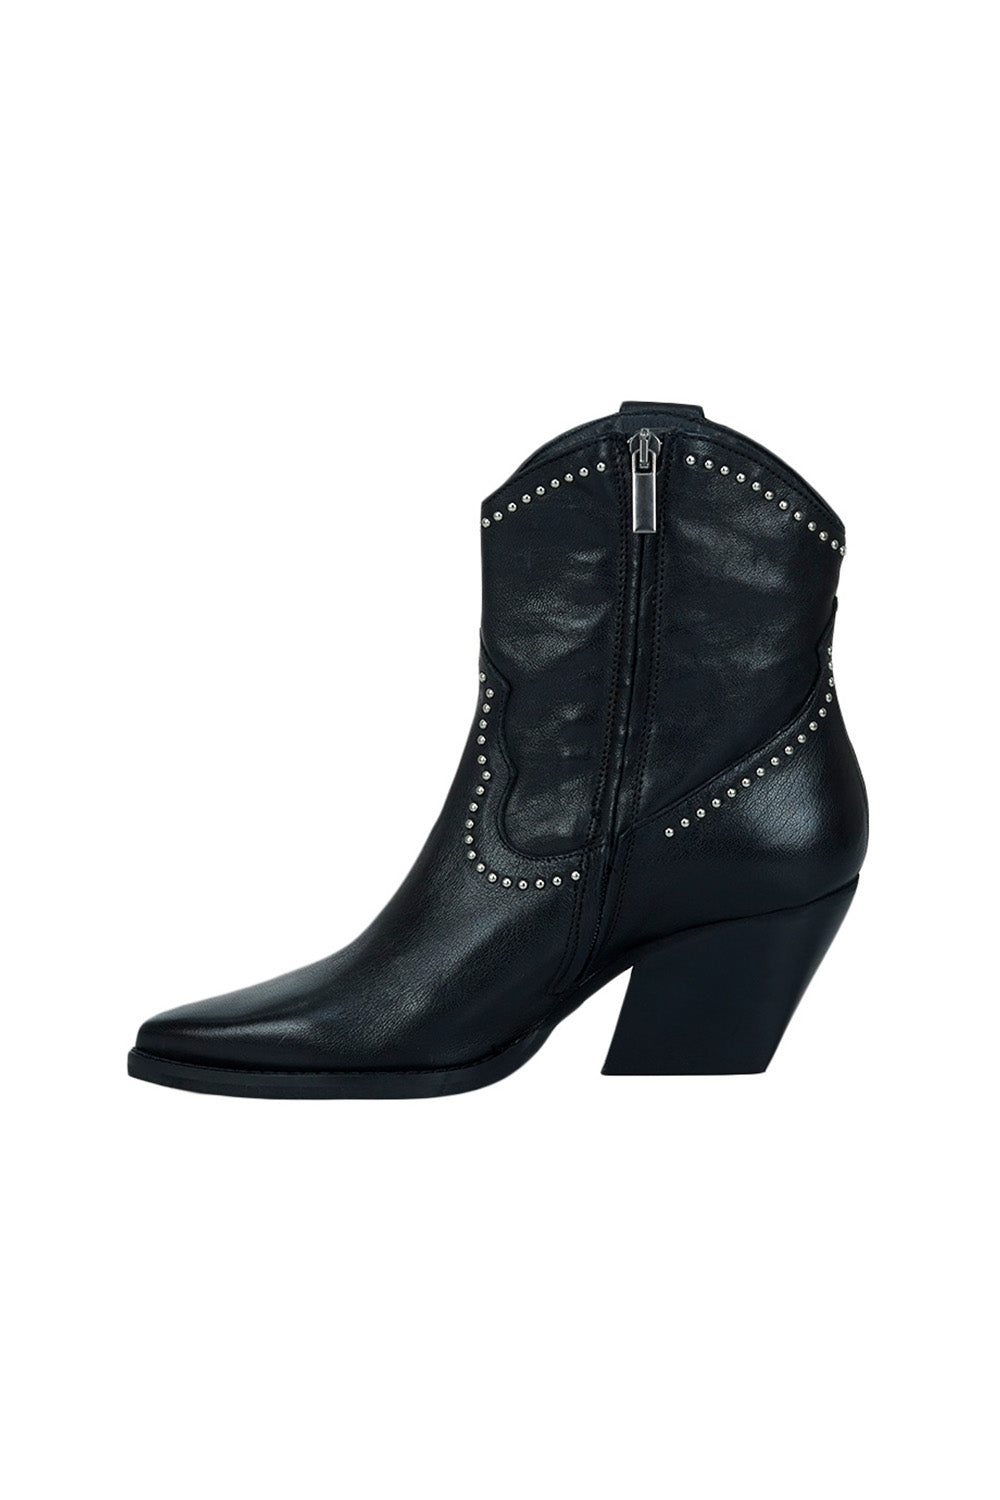 estilo emporio casero boot black